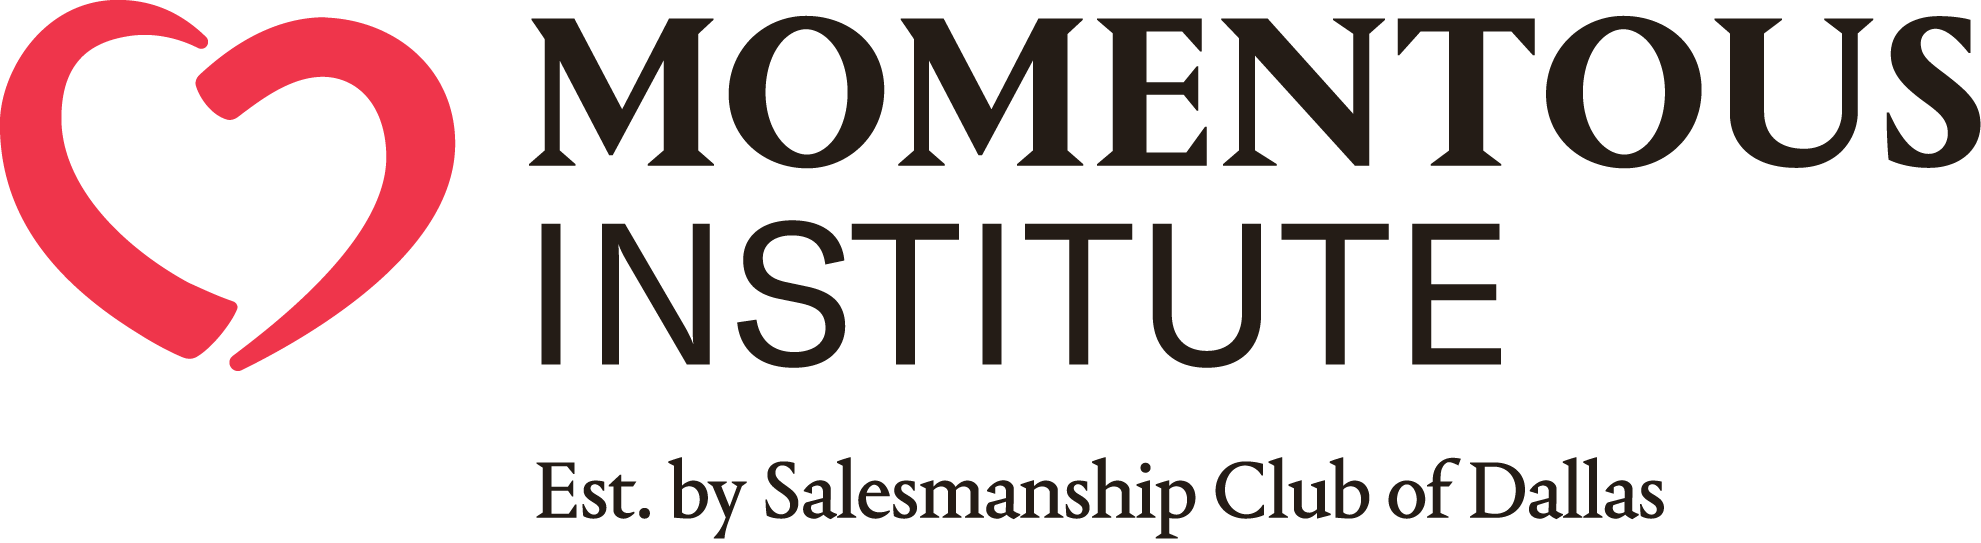 Momentus Institute logo